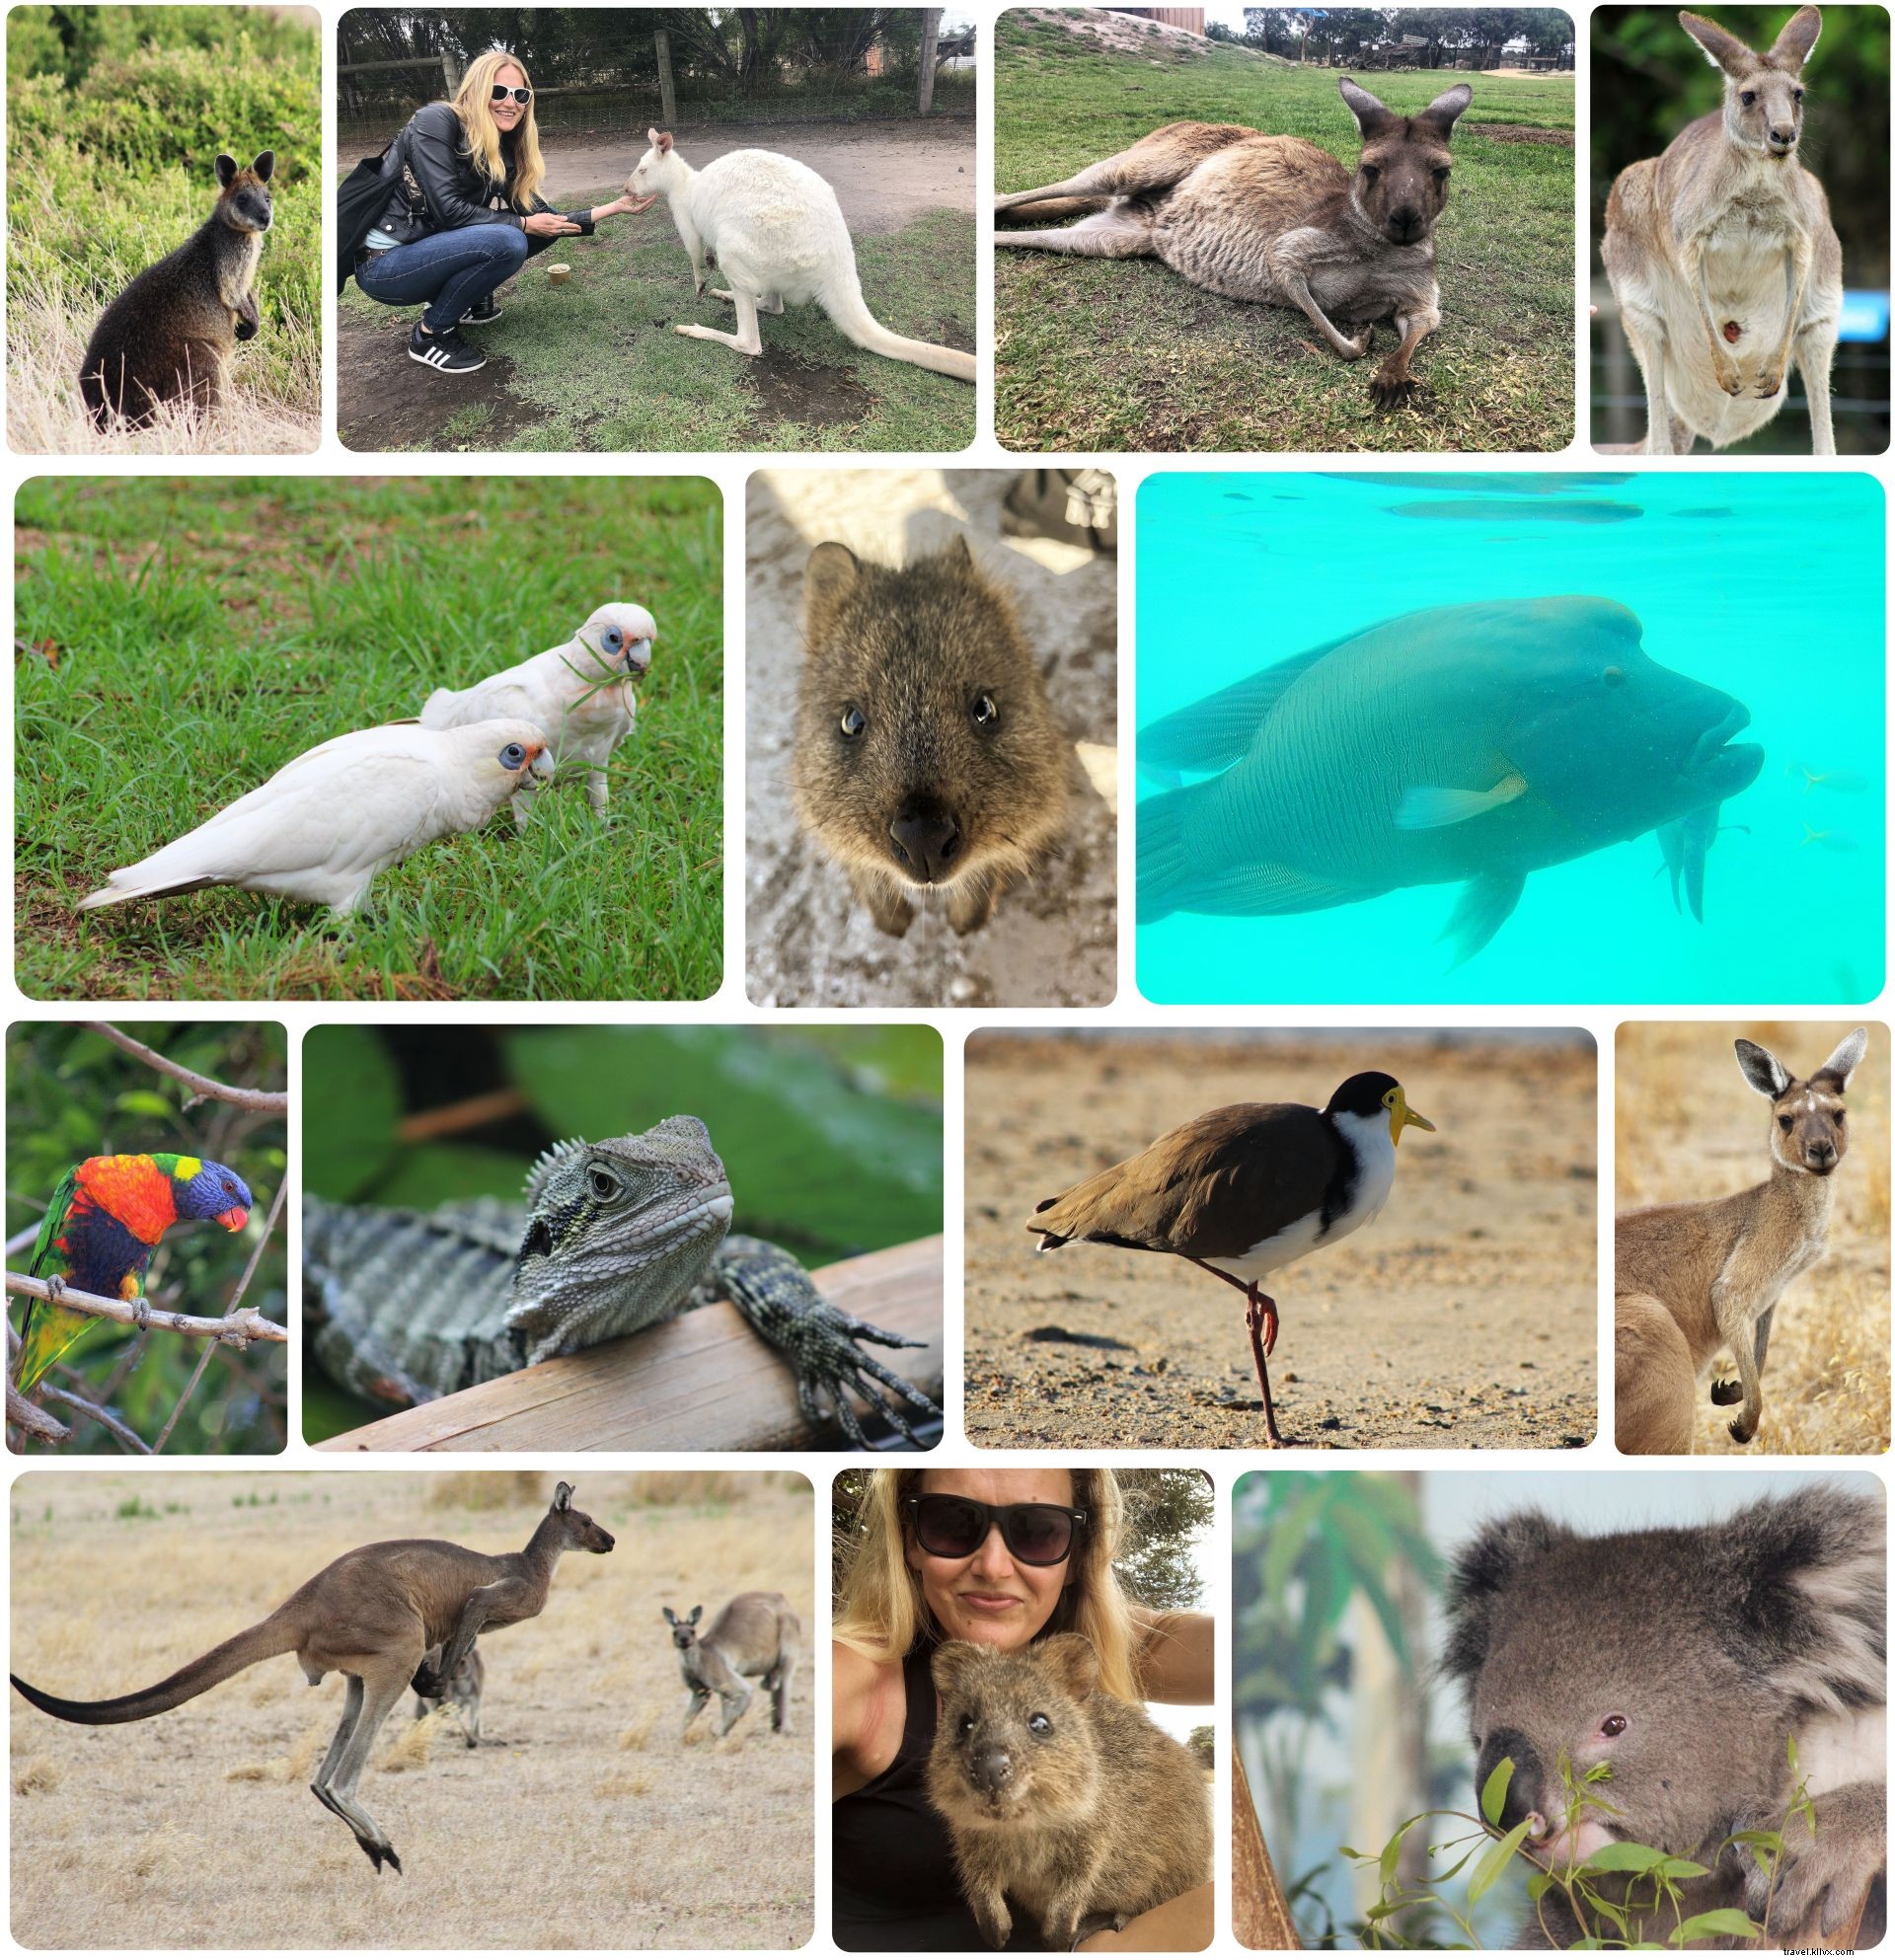 I miei sei migliori punti salienti del viaggio in Australia